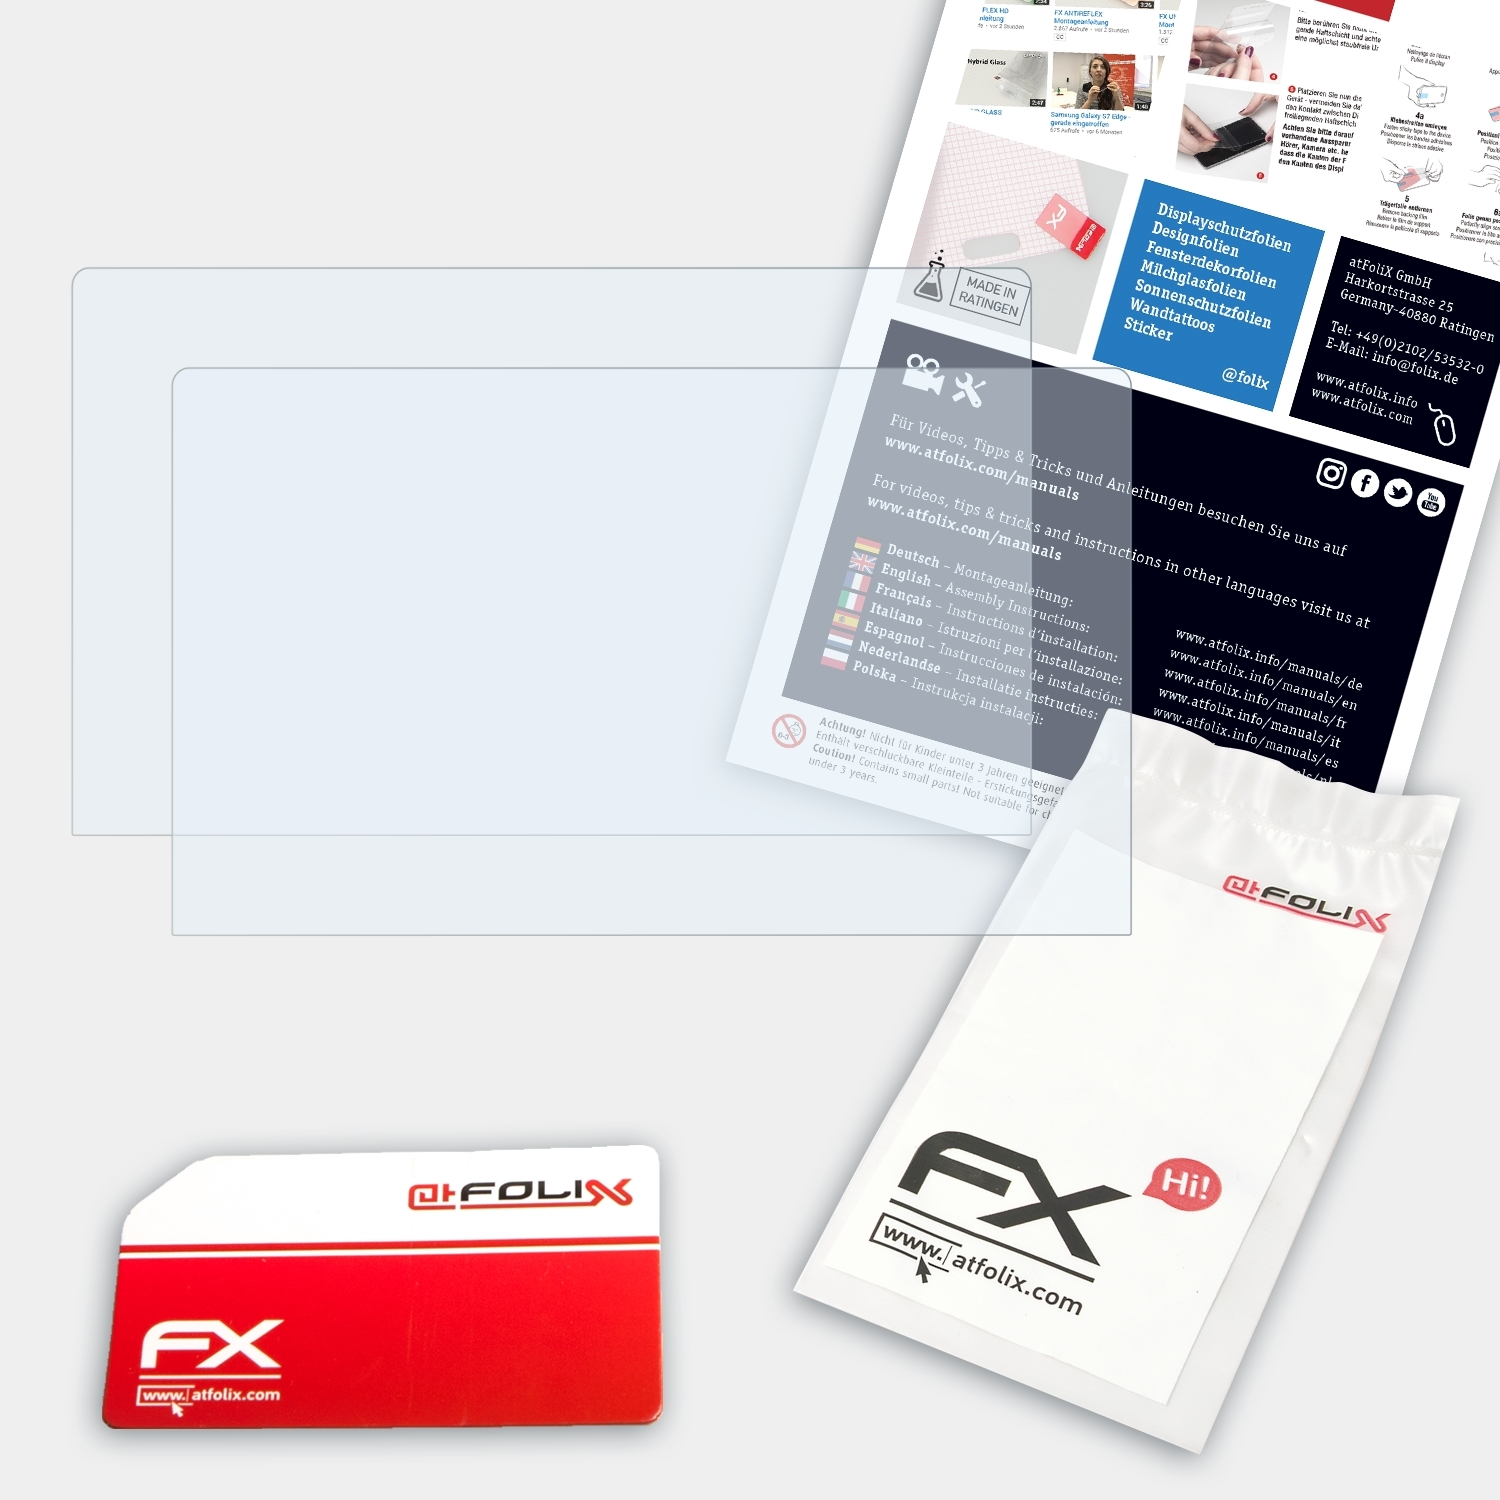 ATFOLIX 2x FX-Clear Pro) Displayschutz(für Artist 22 XP-PEN